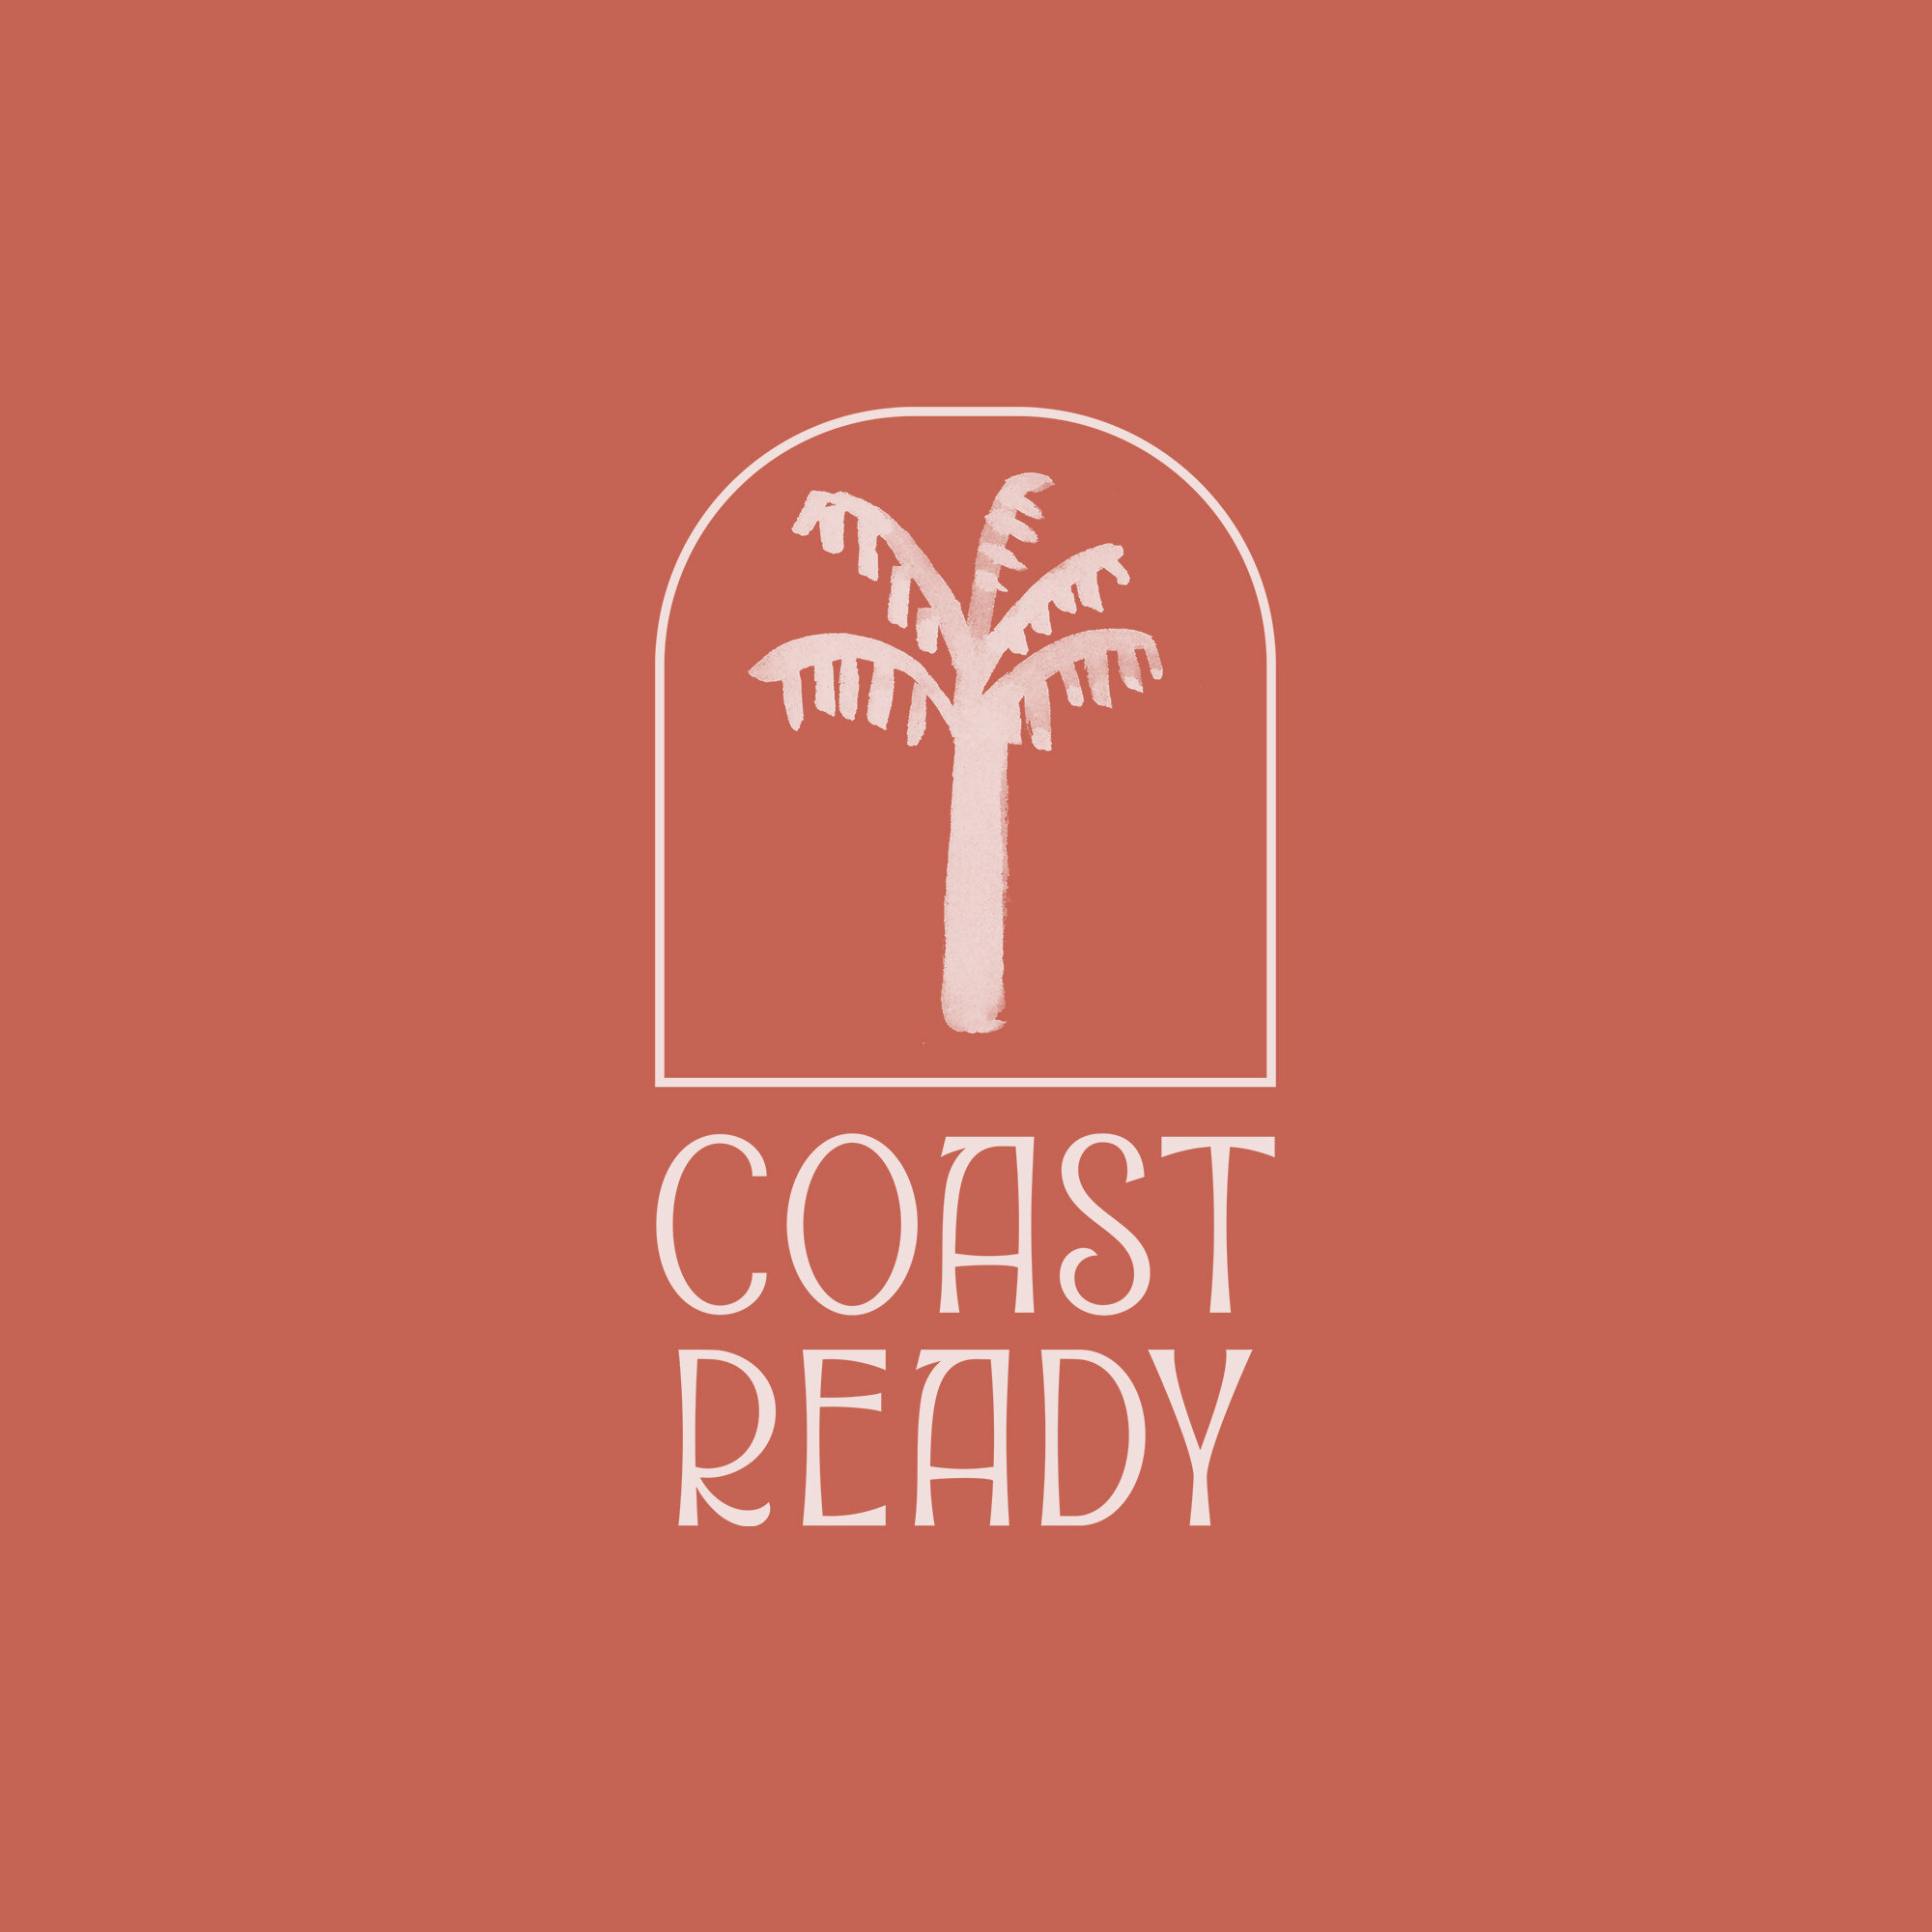 coast-ready-logo.jpg